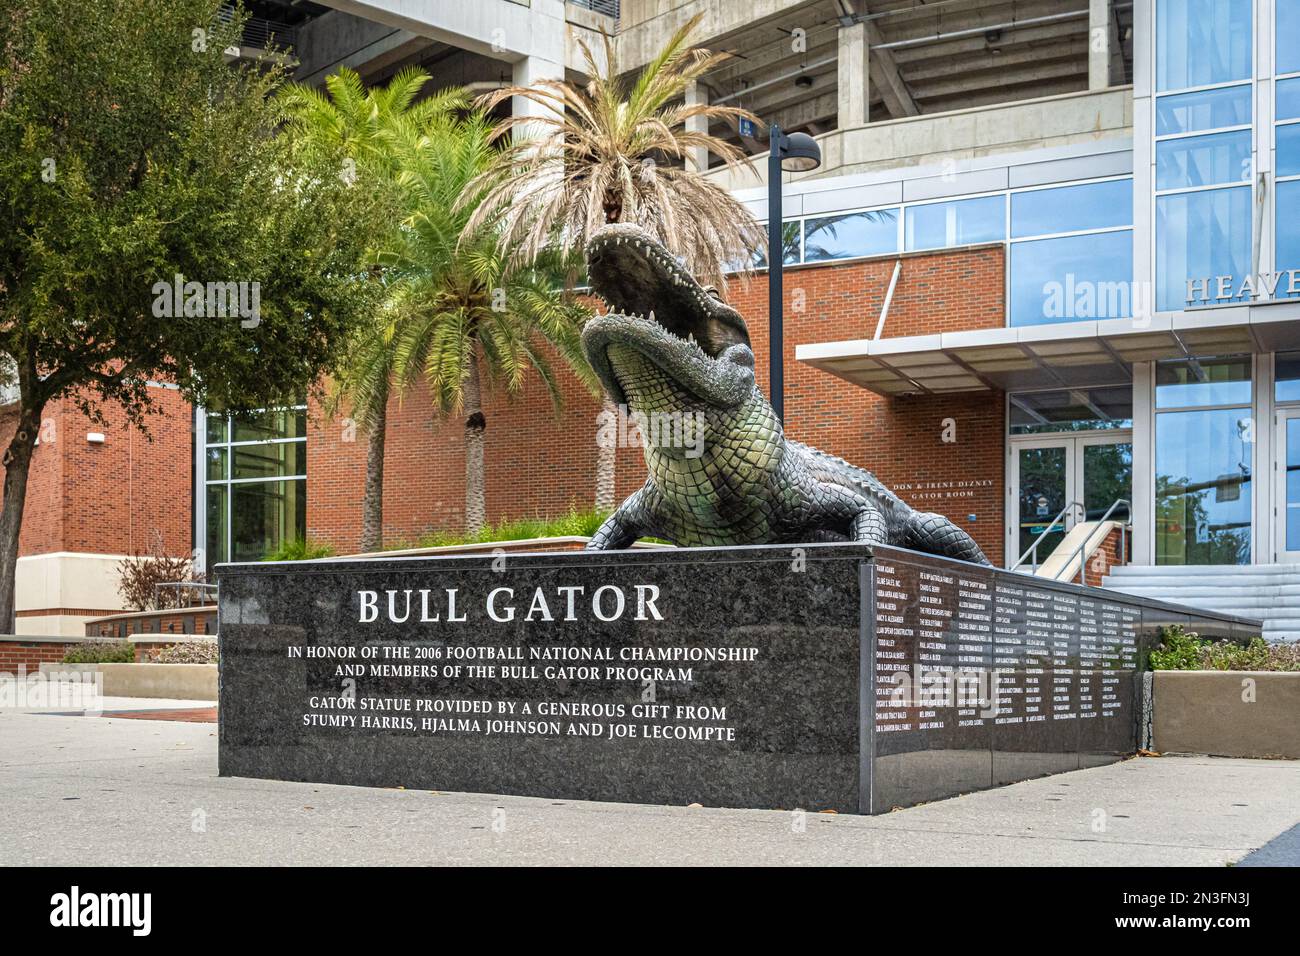 Statue de bronze Bull Gator au stade Ben Hill Griffin à Gainesville, Floride, en hommage à la victoire des Gators au Championnat national de football 2006. Banque D'Images